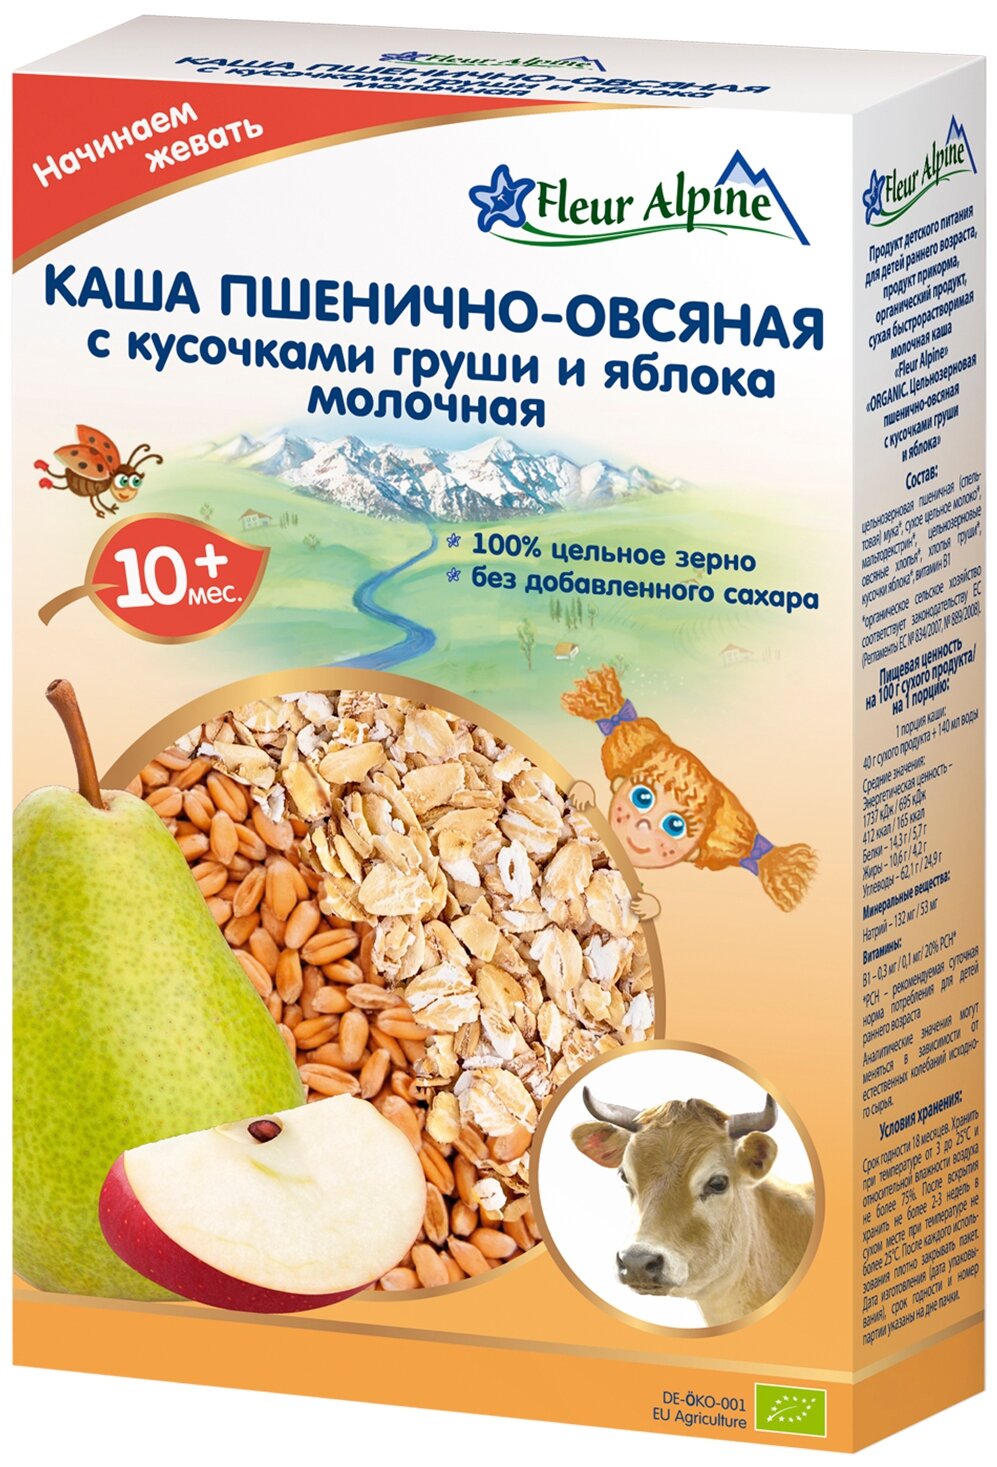 Каша Fleur Alpine молочная Органик пшенично-овсяная с кусочками груши и яблока, 10 мес, 200 г